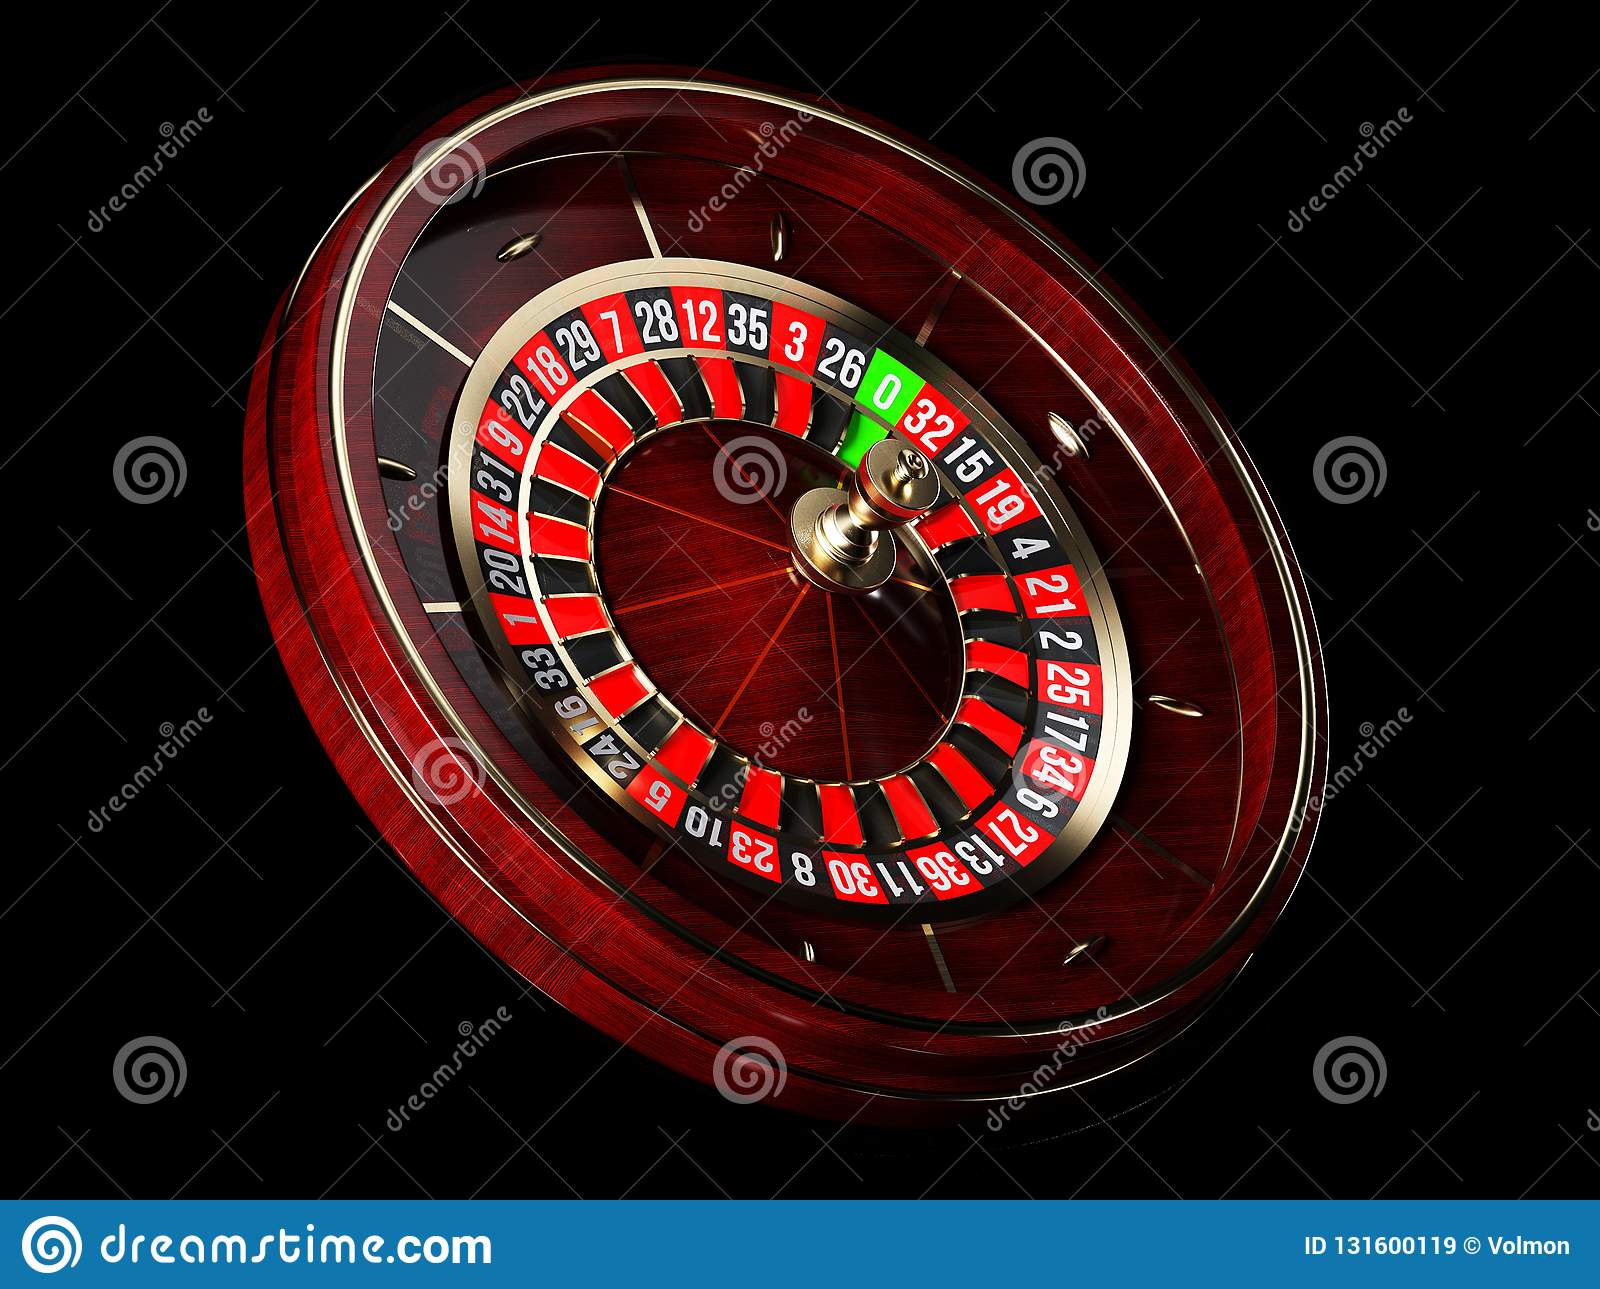 Geant bitcoin casino ouverture 10 juin 2023